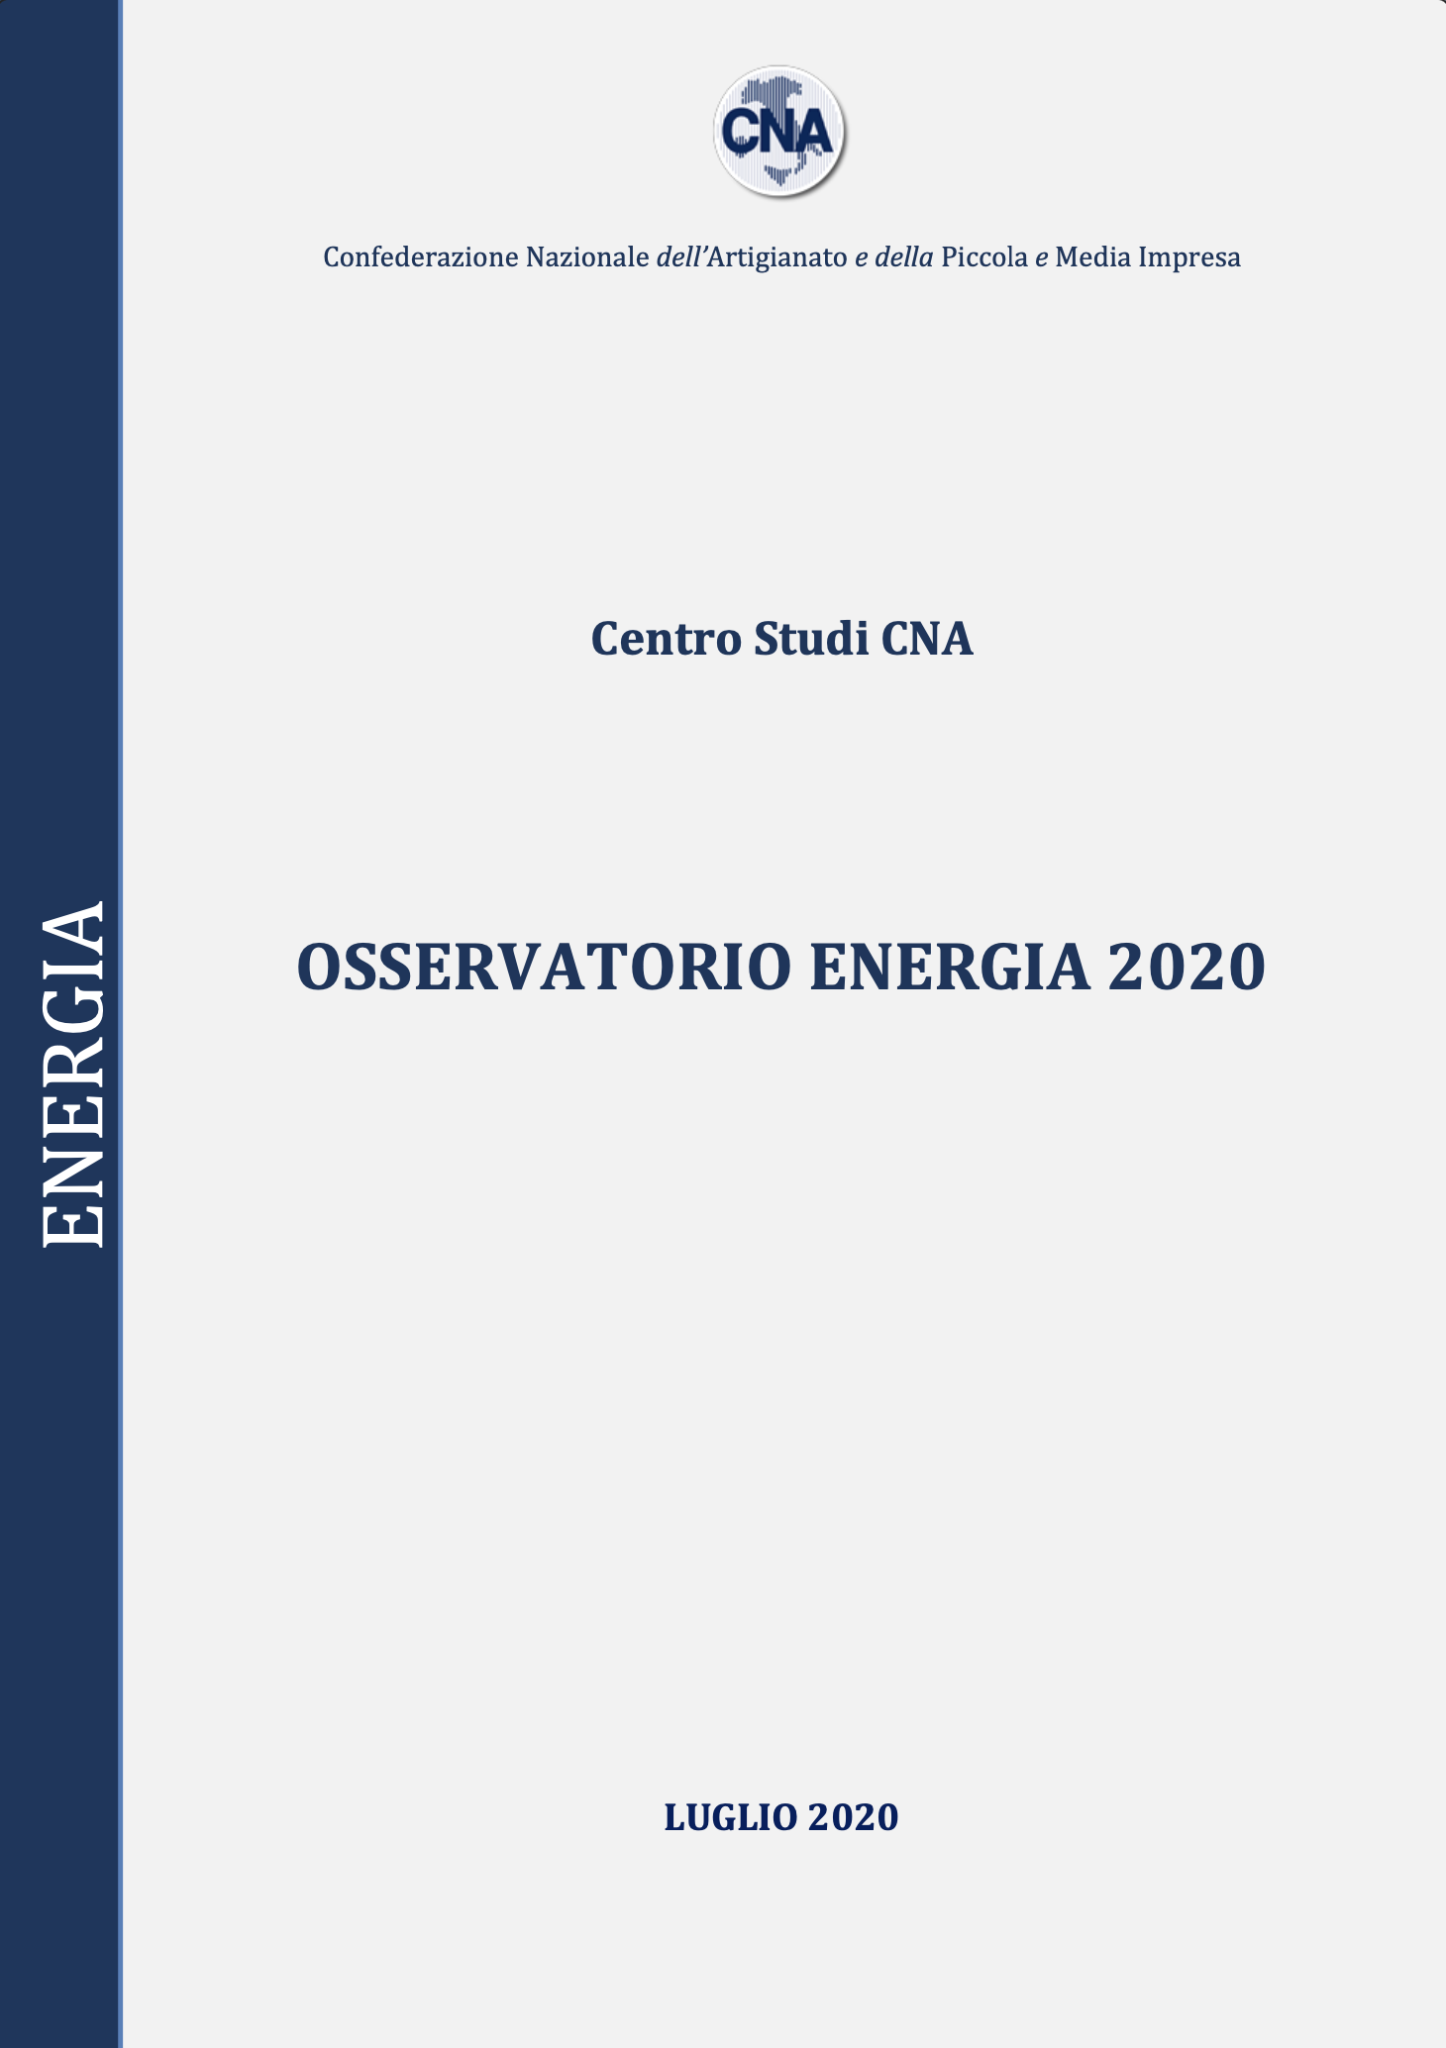 OSSERVATORIO ENERGIA 2020